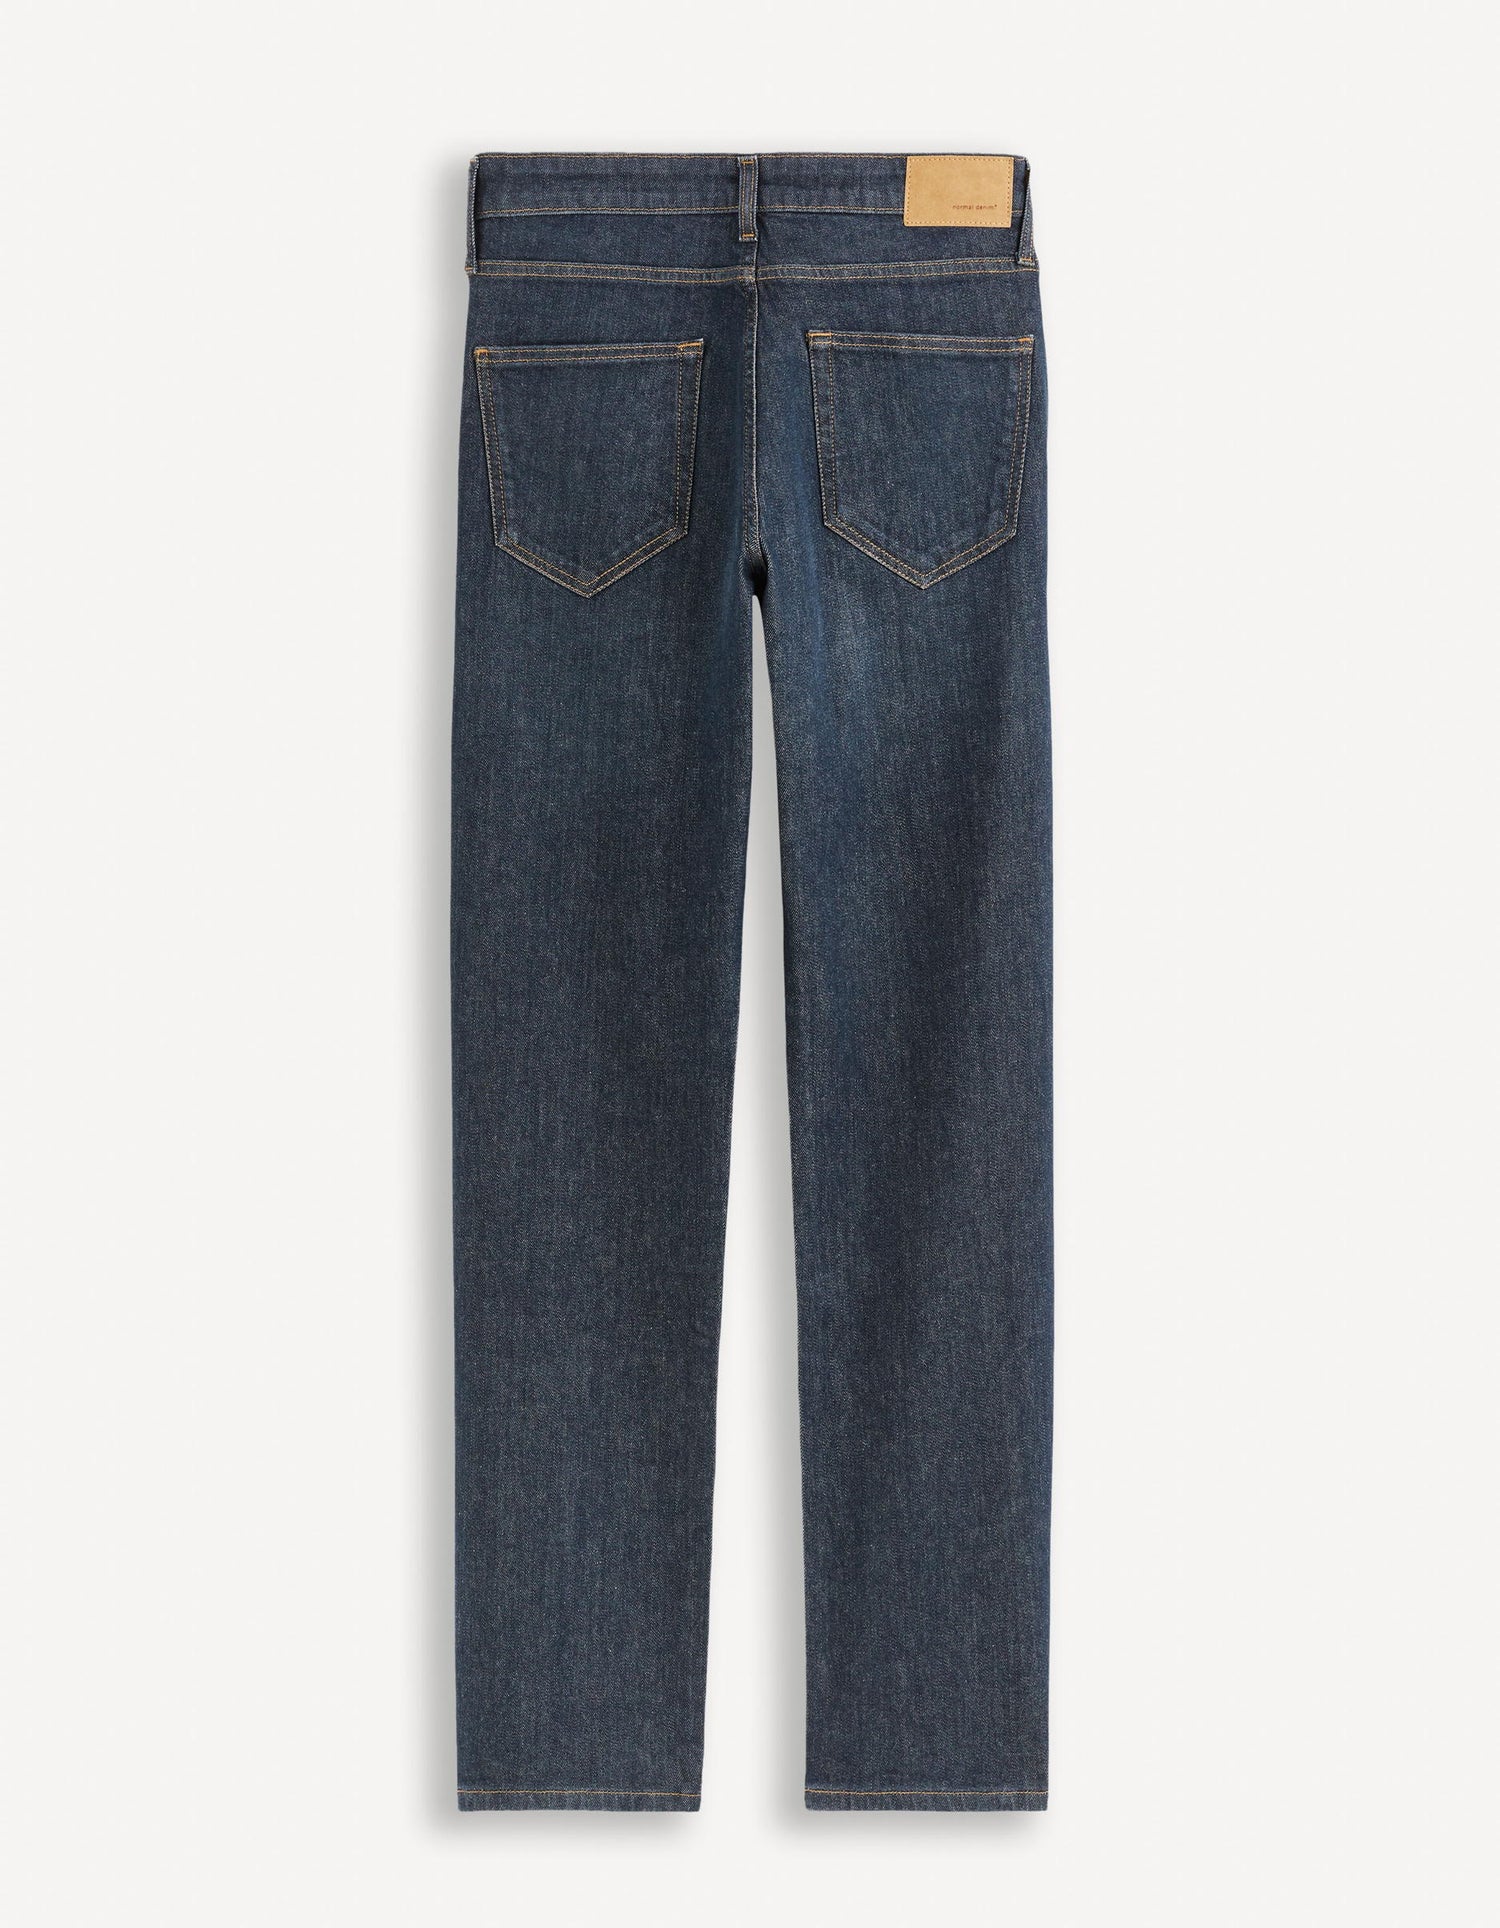 Regular C5 Stretch Jeans 3 Lengths_REGULAR3L_BRUT_06